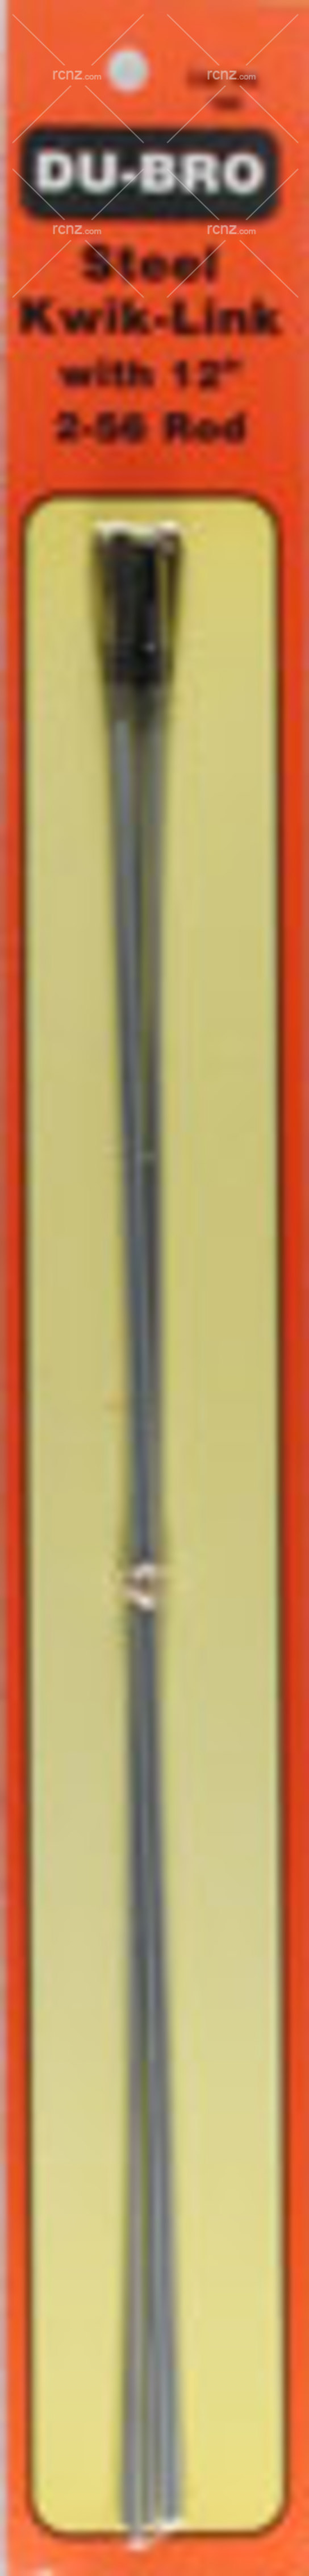 Dubro - Steel Kwik-Link with 12" 2-56 Rod (5) image